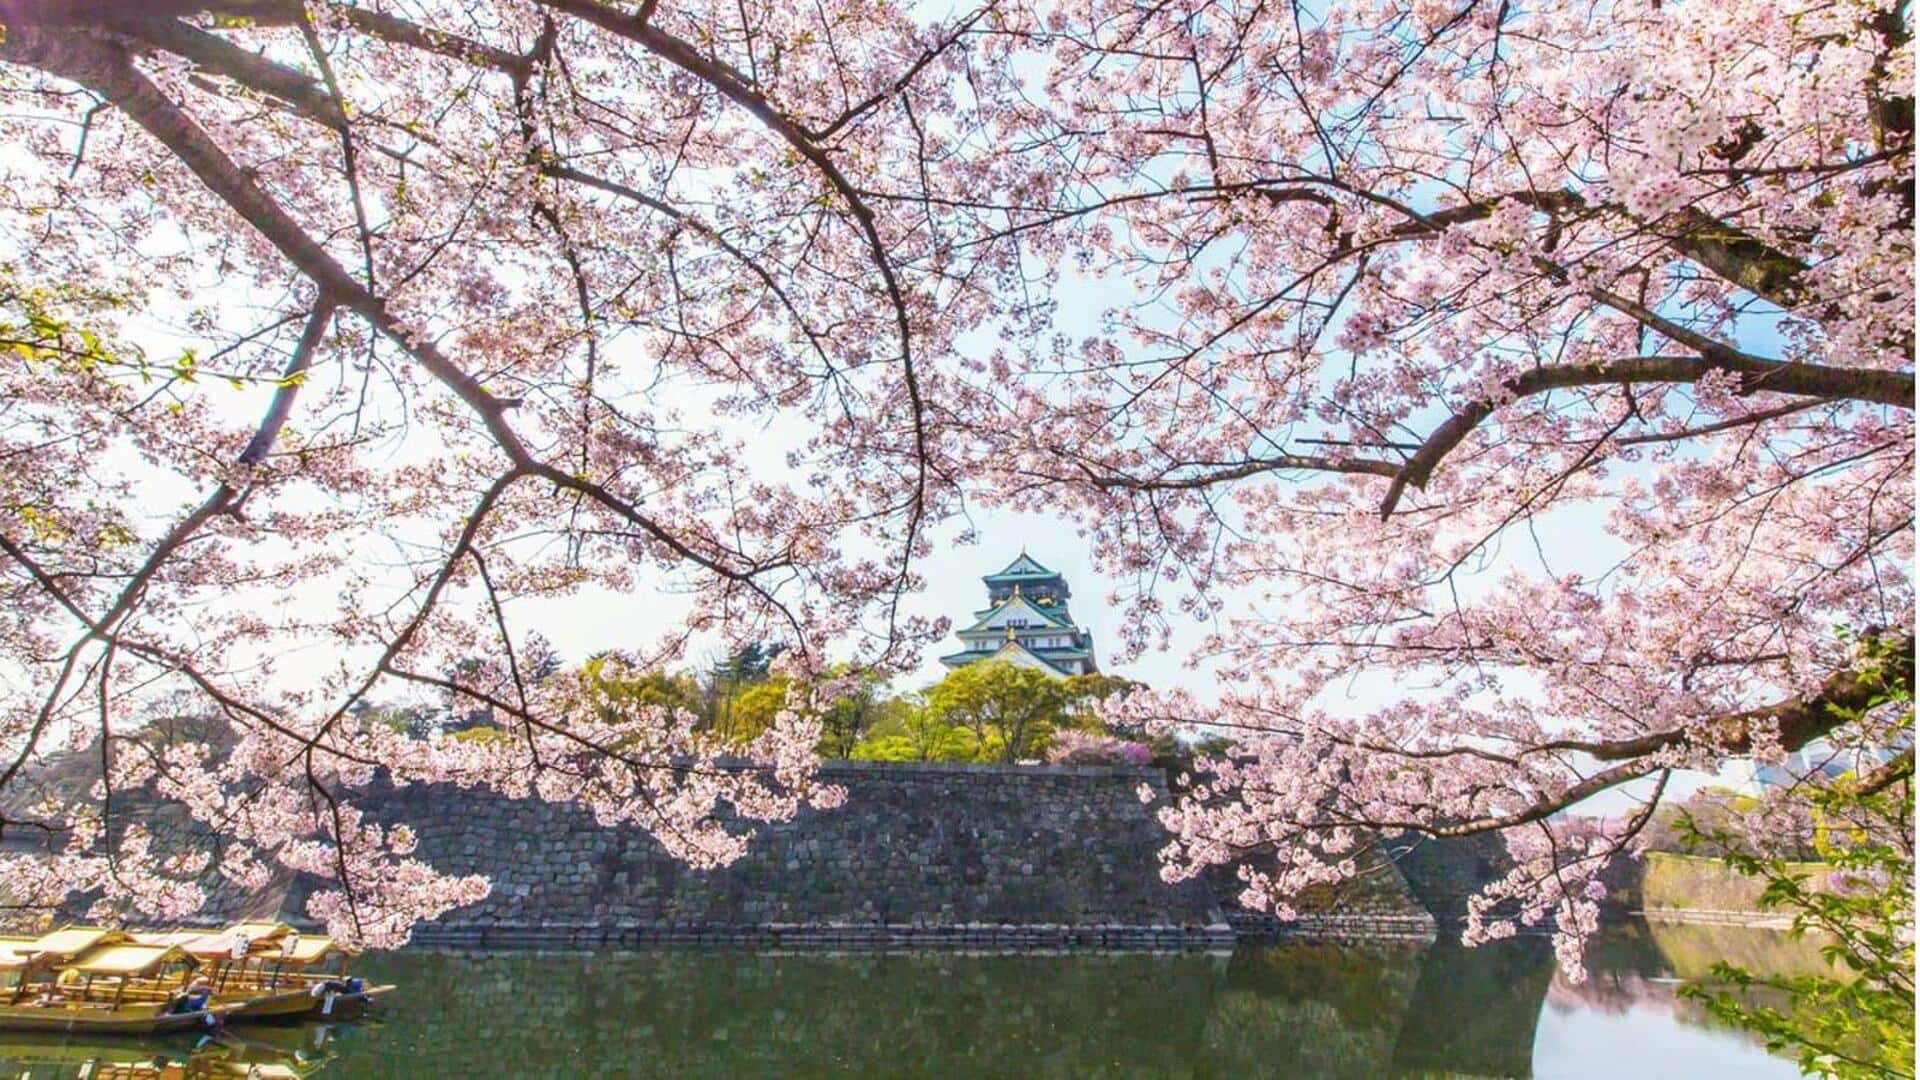 Saksikan kemegahan bunga sakura di Osaka: Tempat yang wajib dikunjungi saat musim semi